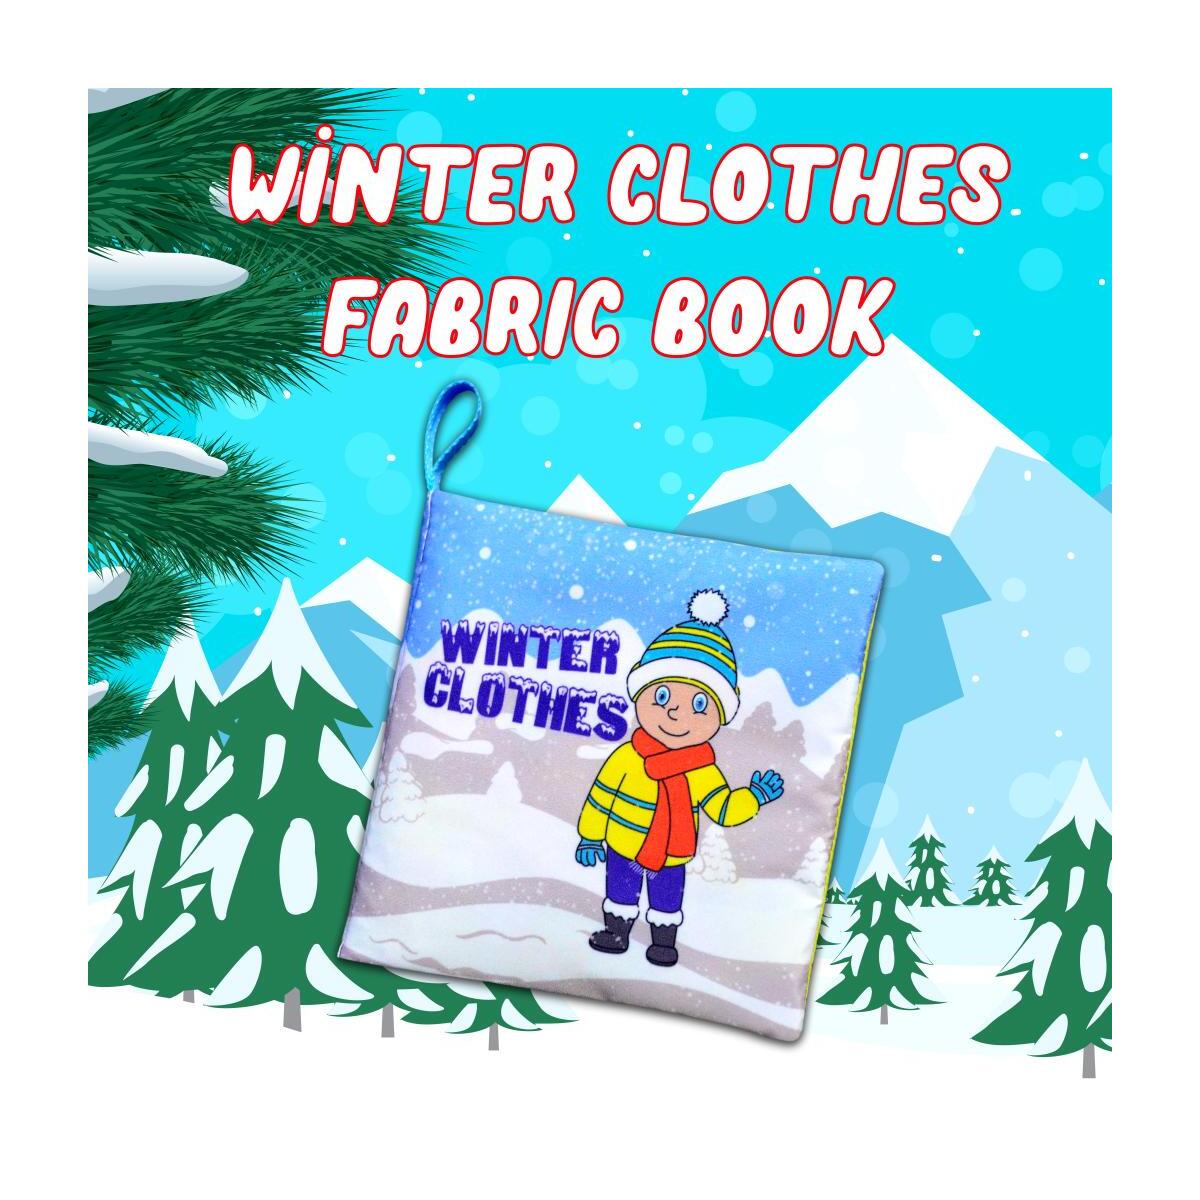 Tox İngilizce Kışlık Giysiler Kumaş Sessiz Kitap E124 - Bez Kitap , Eğitici Oyuncak , Yumuşak Ve Hışırtılı